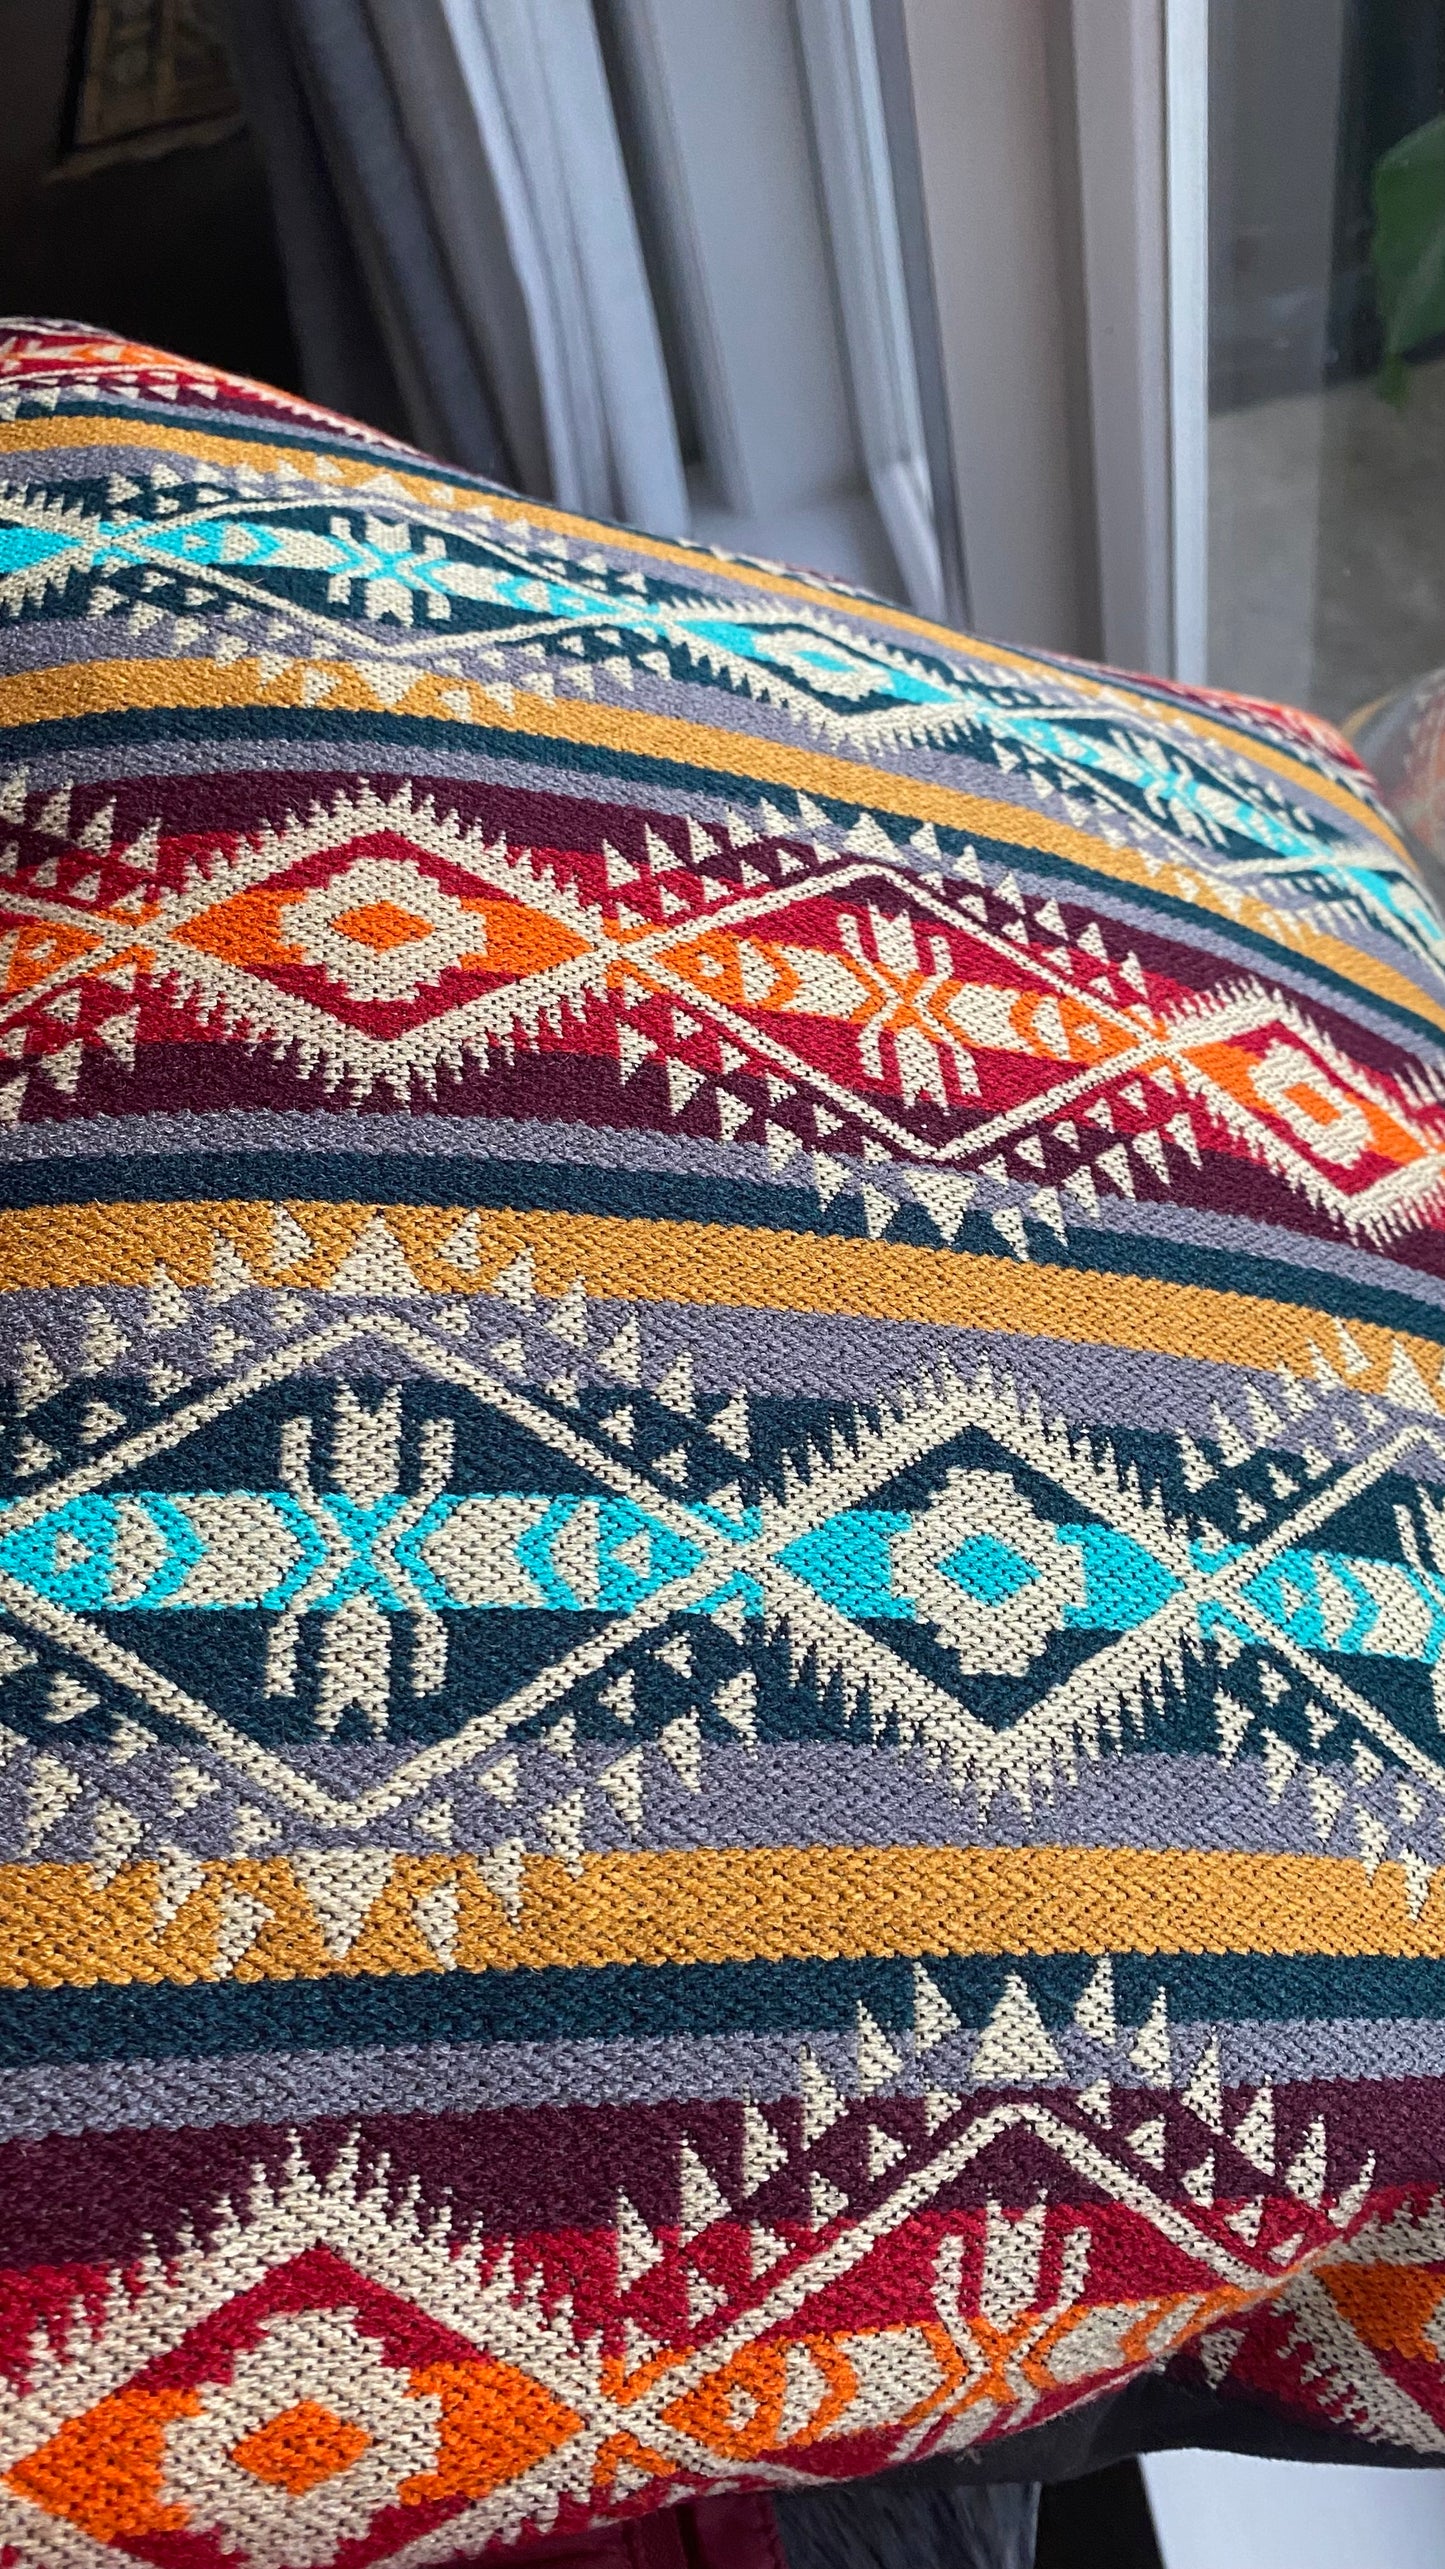 Stylish cushion covers